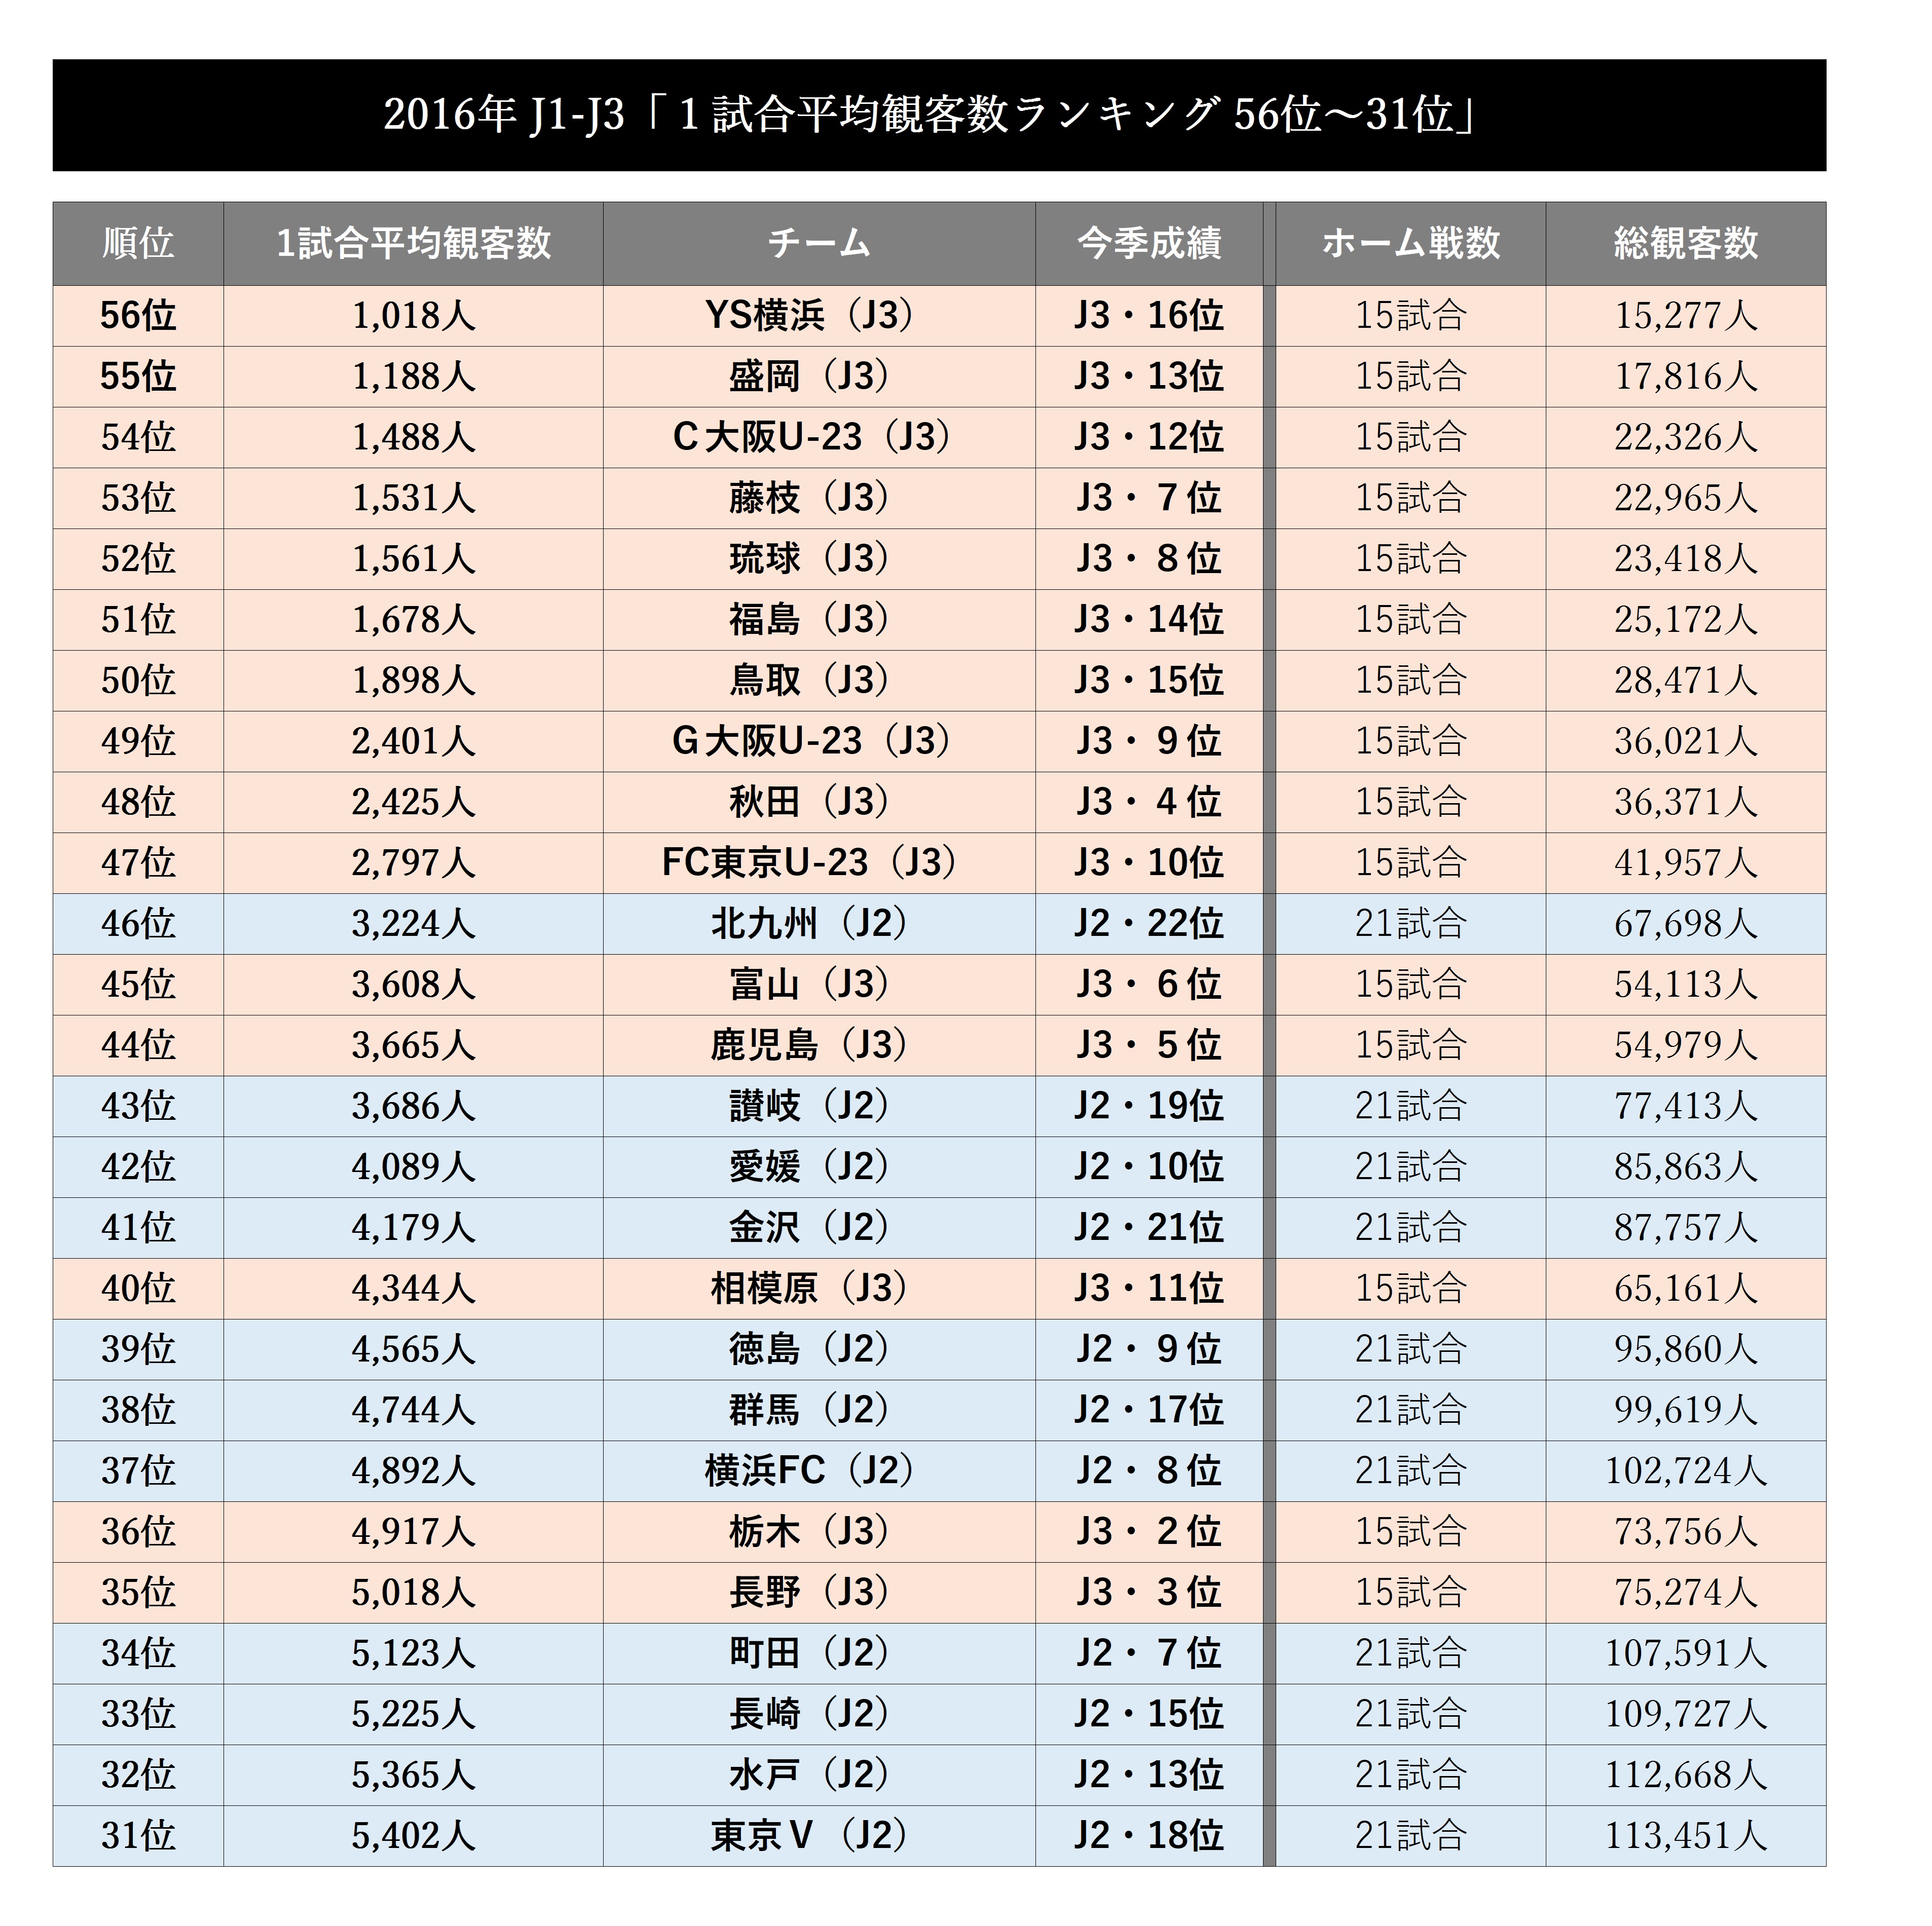 16年jリーグ全56チーム １試合平均観客数ランキング J3最高位は大分 J2の札幌や松本がj1勢に対抗 Football Zone Web フットボールゾーンウェブ